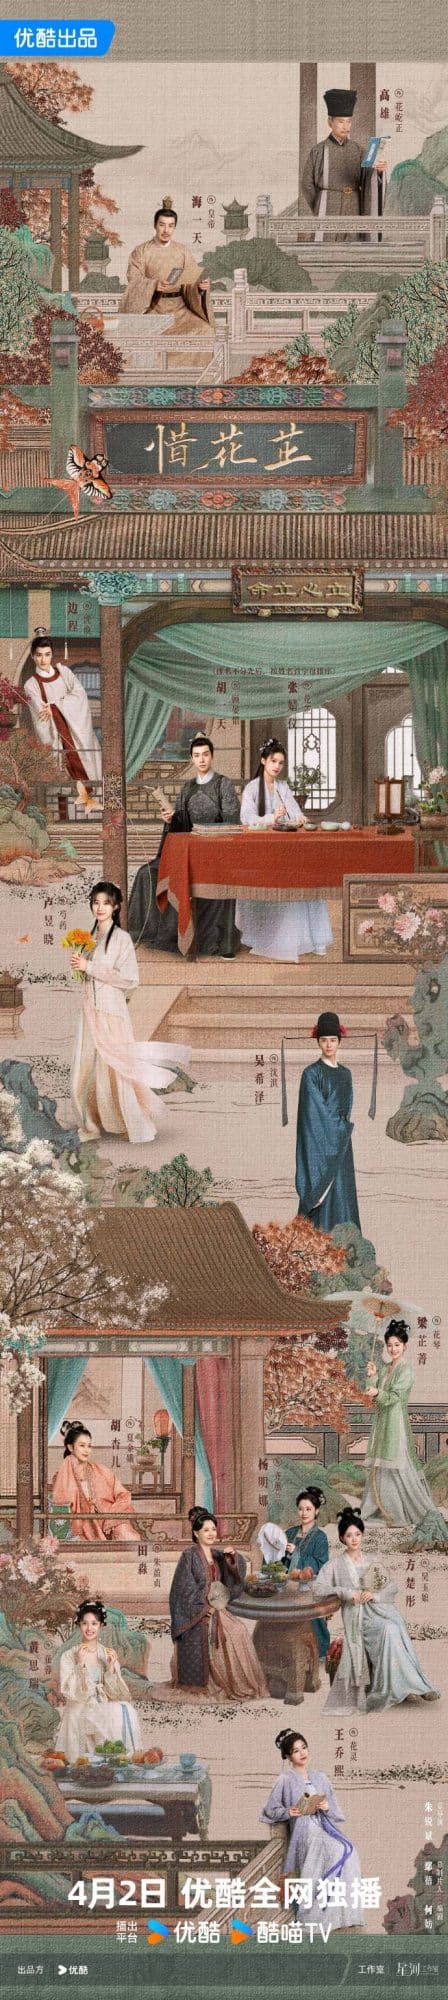 Объявлена дата премьеры дорамы "История Хуа Чжи" с Ху И Тянем и Чжан Цзин И